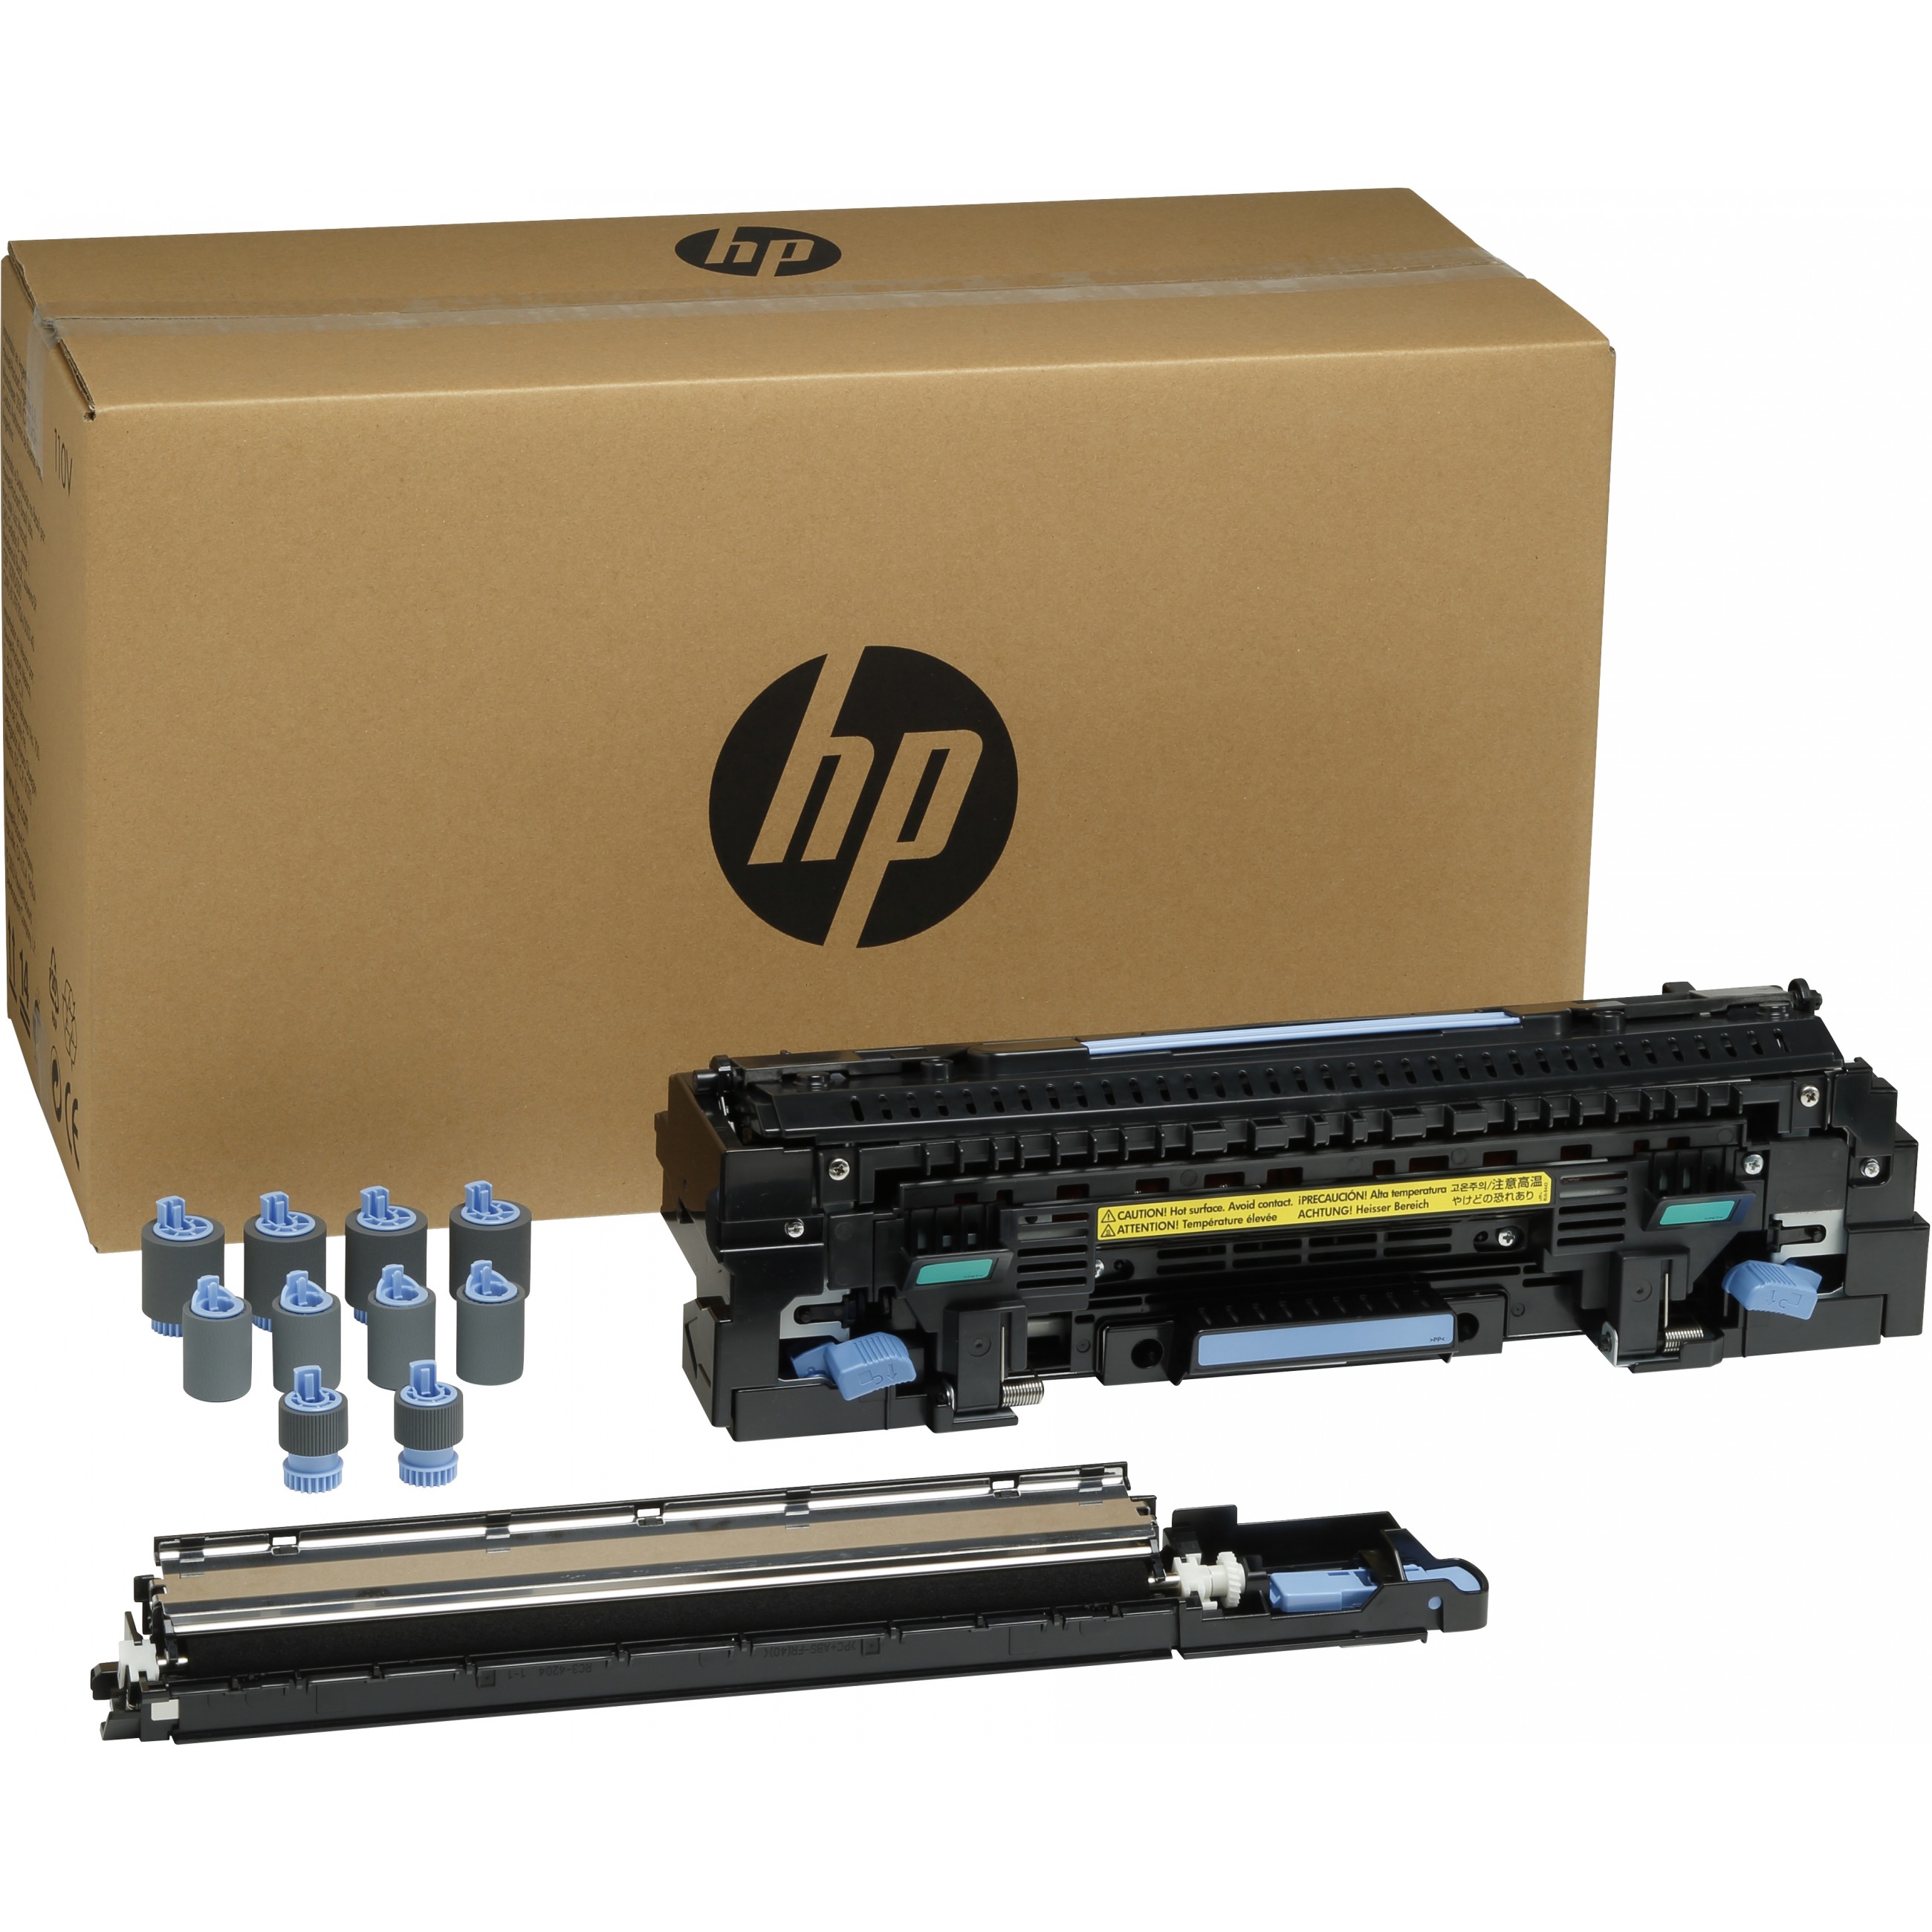 HP LaserJet 220V Maintenance/Fuser Kit - C2H57A